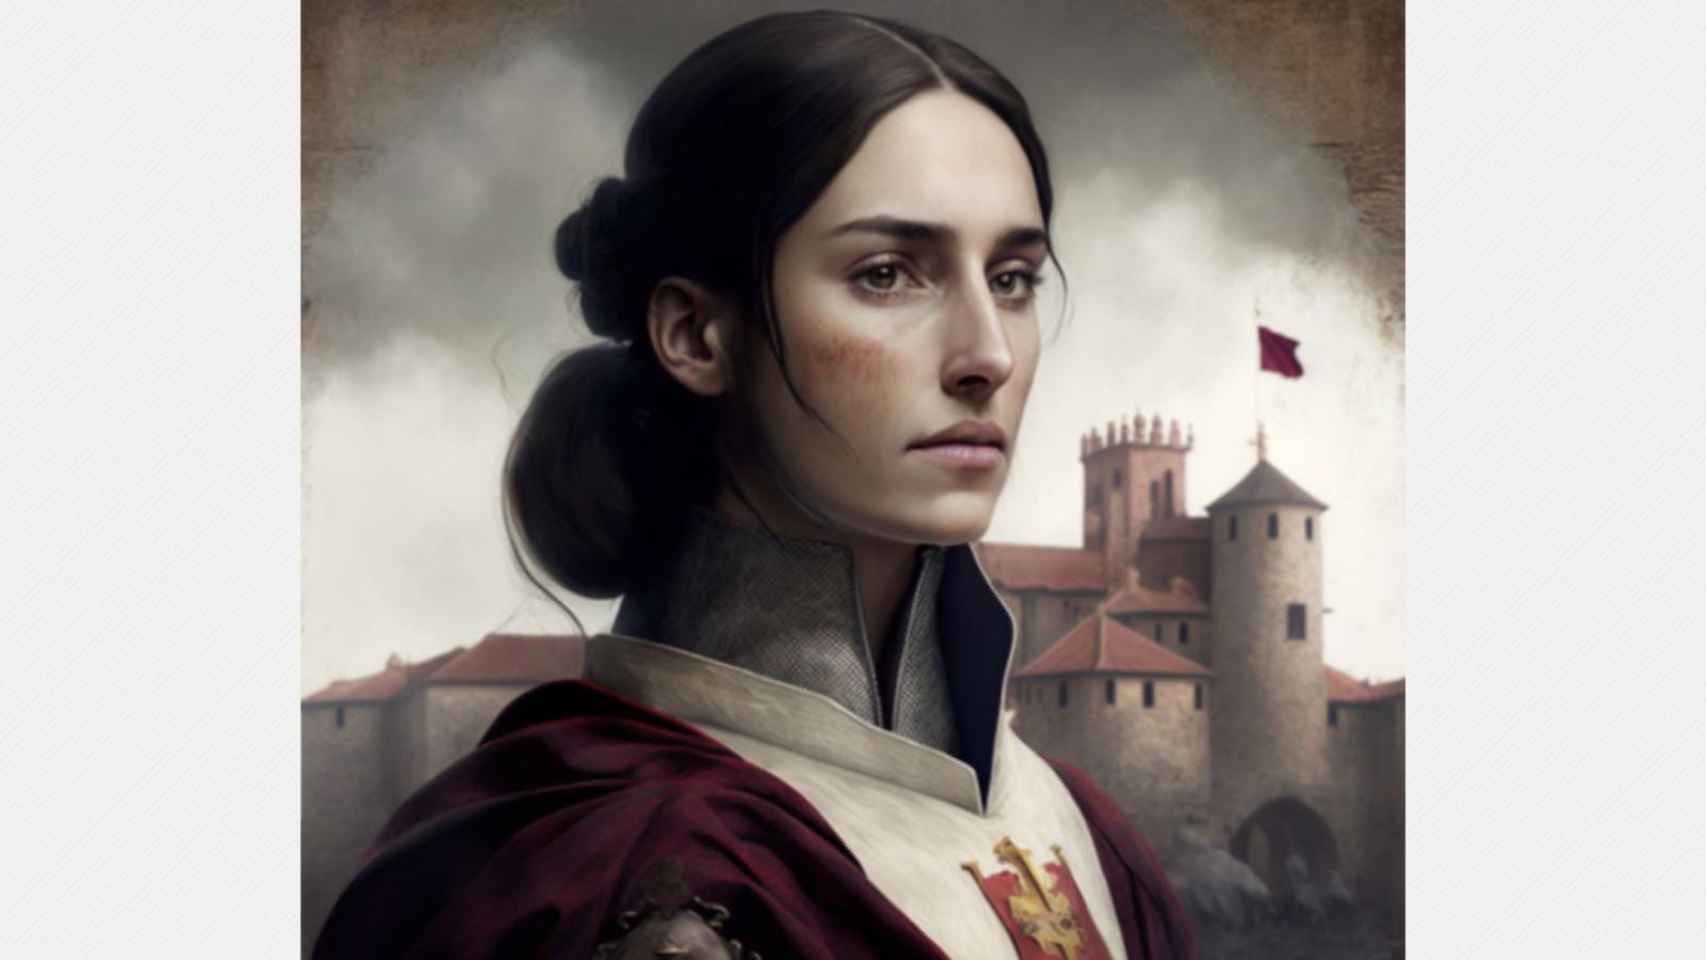 Imagen de Castilla y León si fuera una mujer, según la aplicación Midjourney.